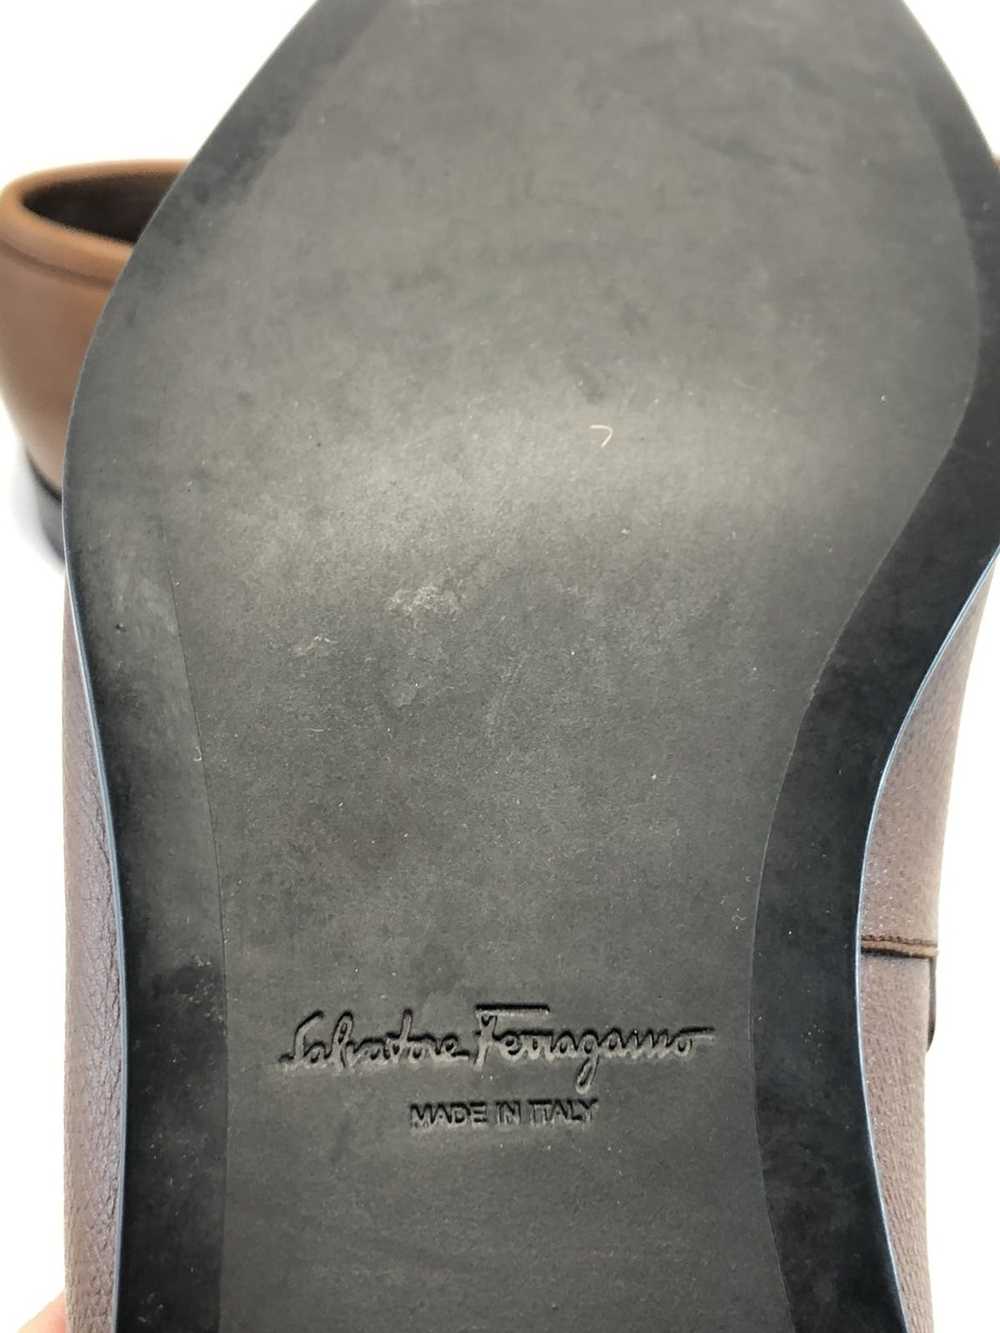 Salvatore Ferragamo Benford loafers - image 6